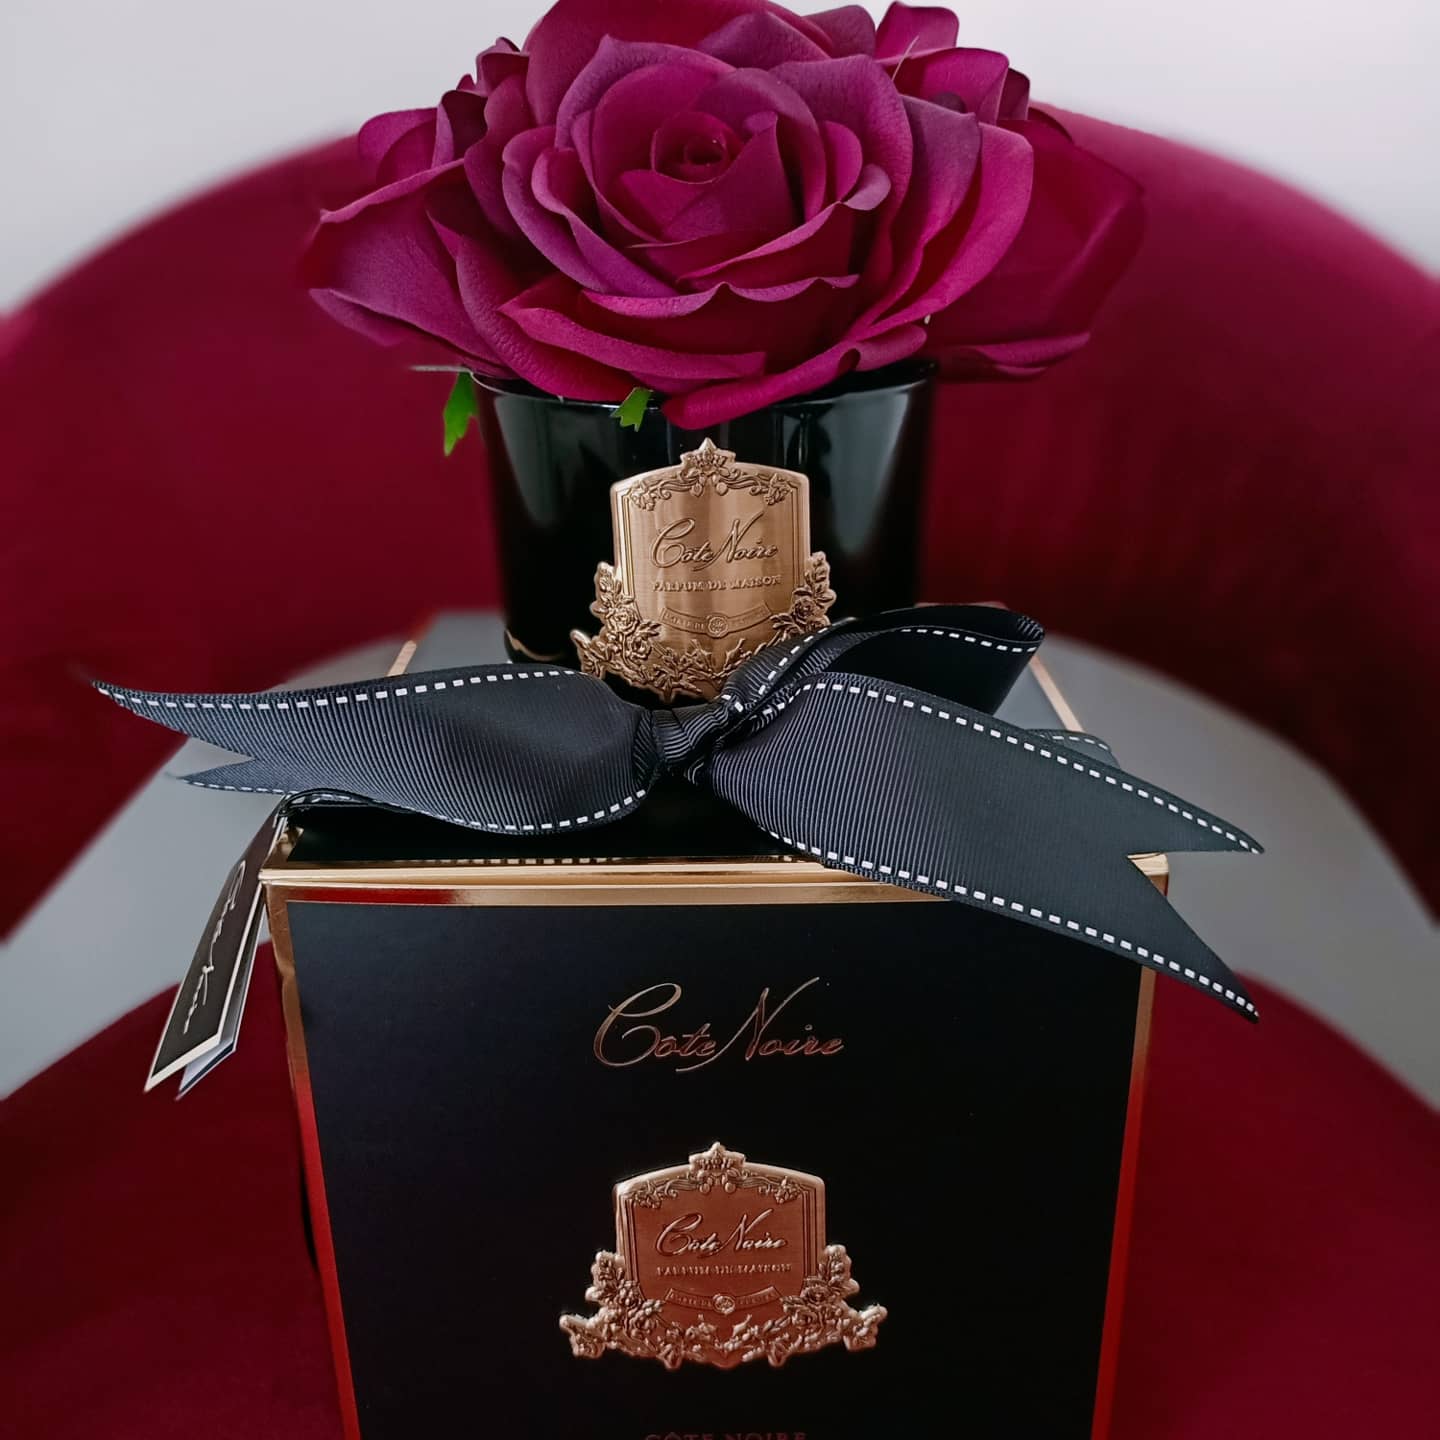 karminrote duftblume auf der schwarzen geschenkbox mit schleife.